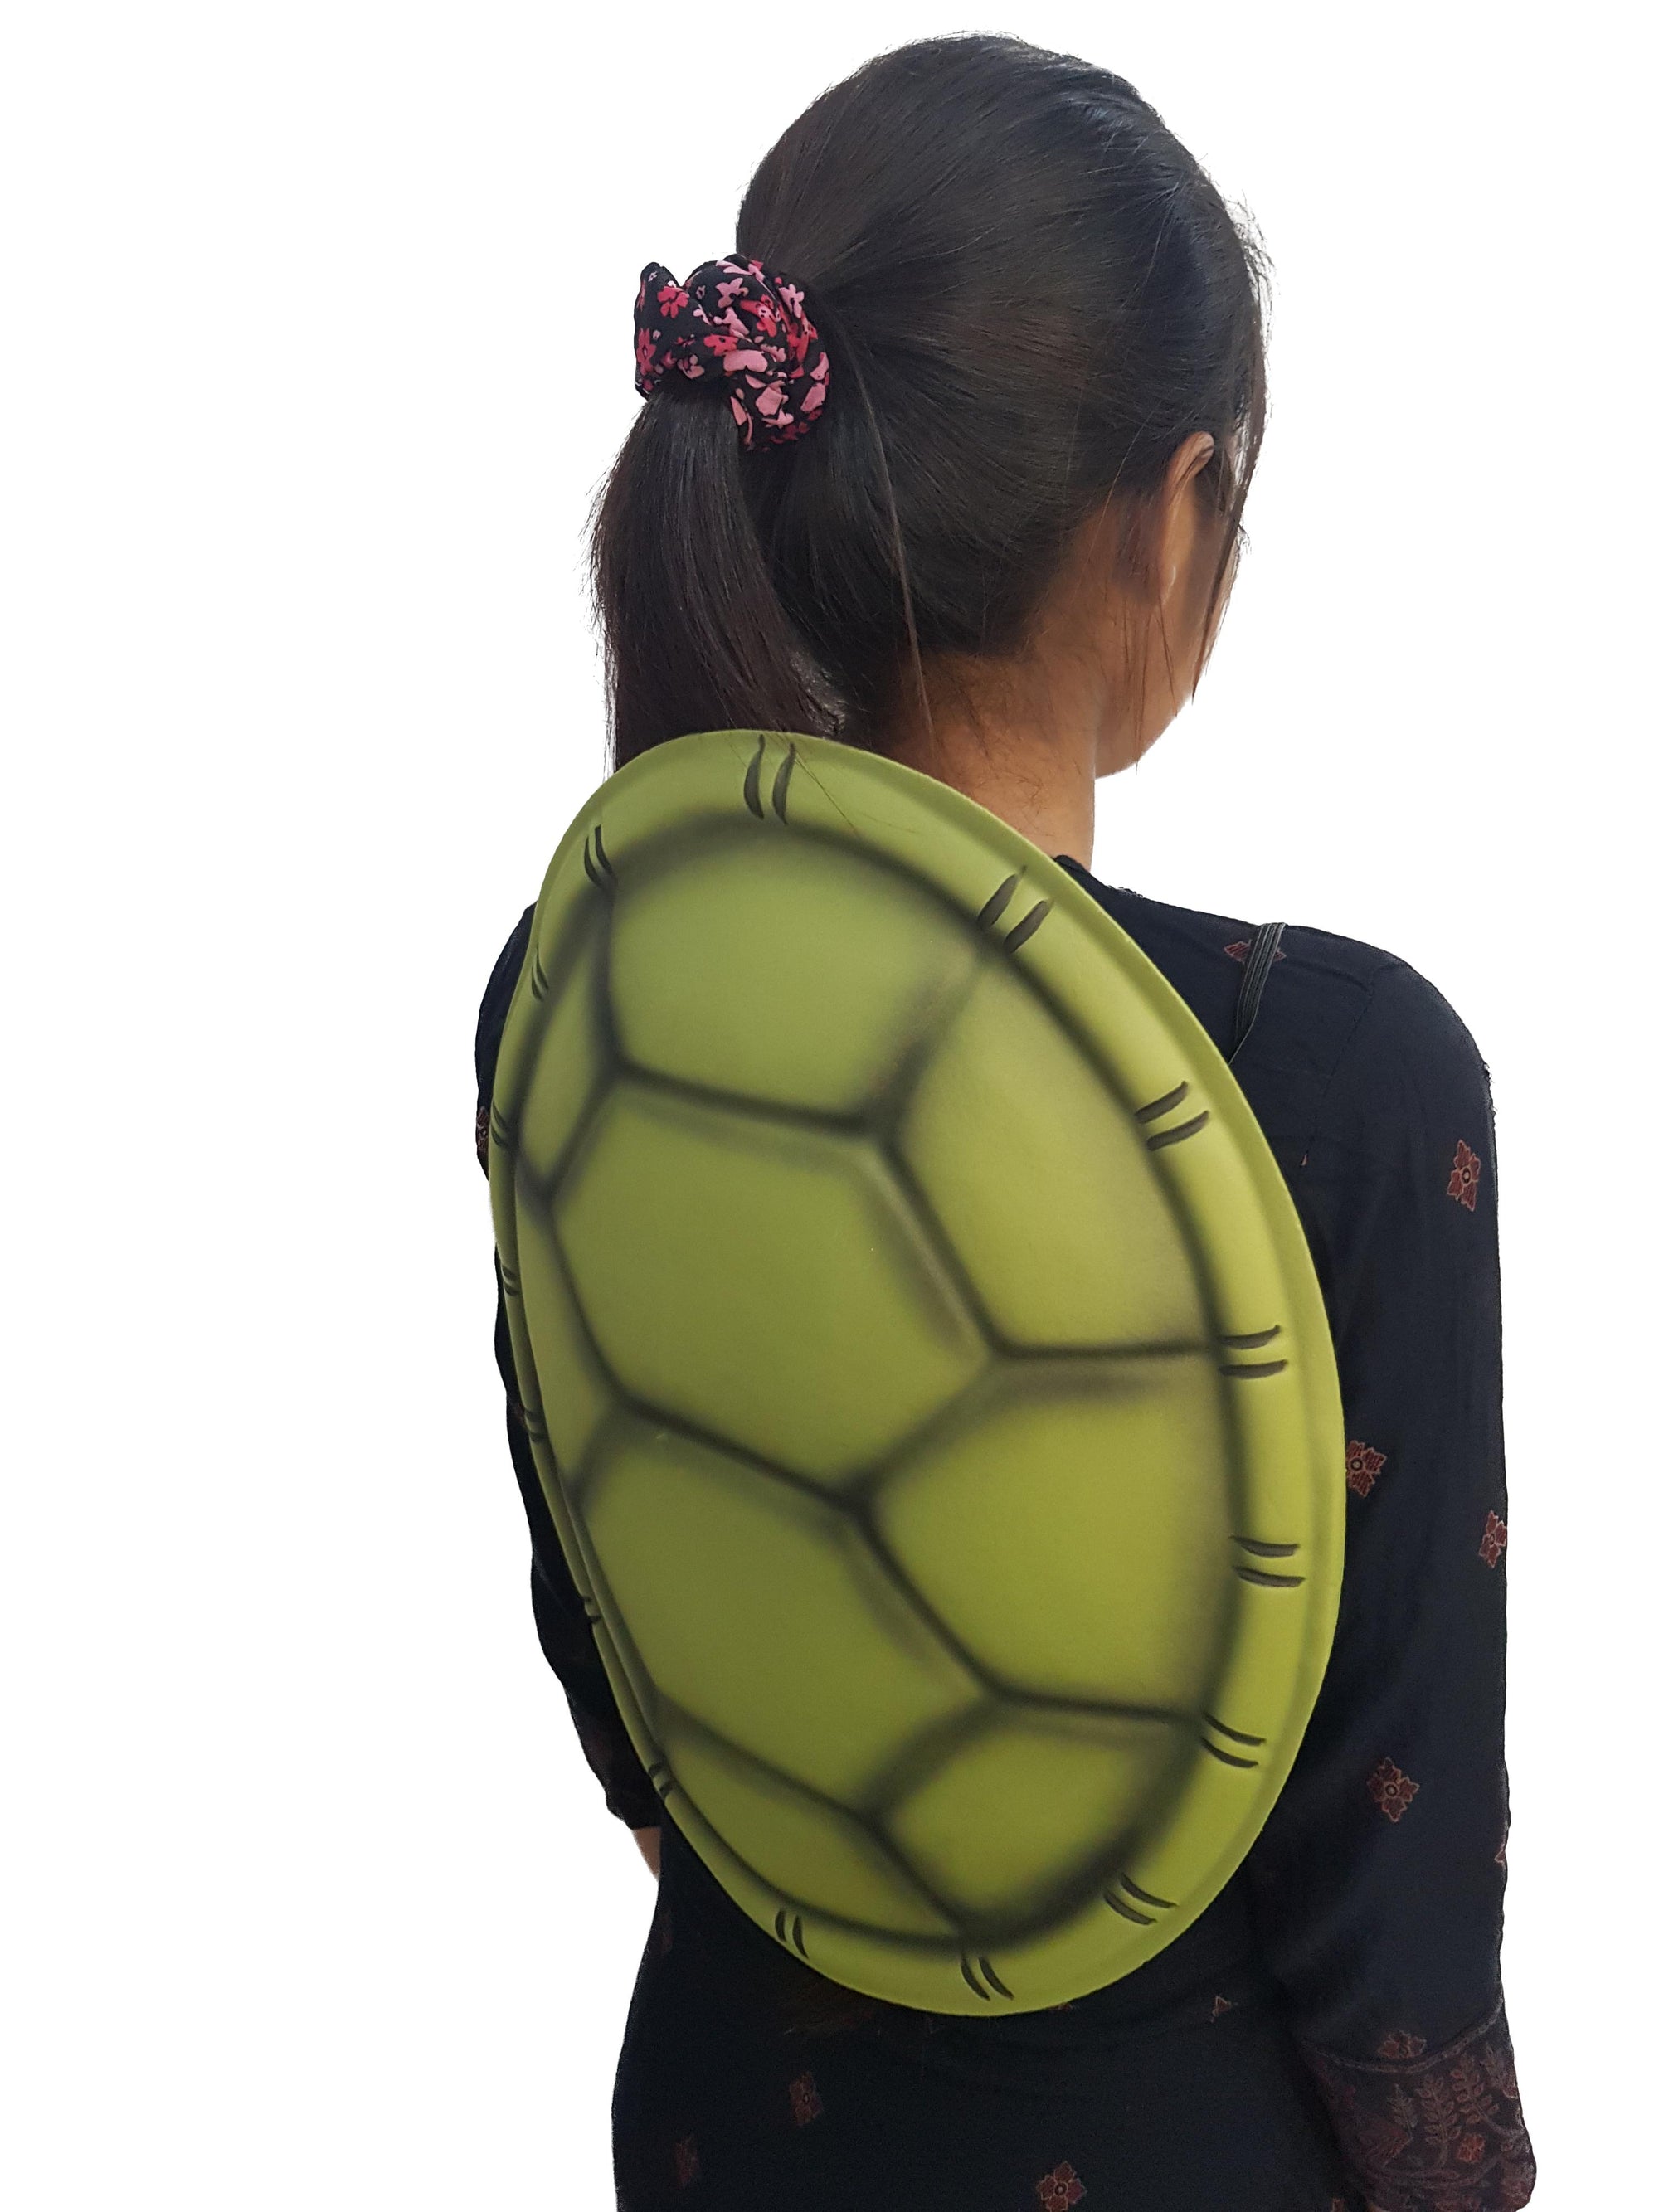 Teenage Turtle Shell Backpack Costume Ninja Turtles Shell Tortoise Costume  Turtle Costume Ninja Turtle Costume Toys Party